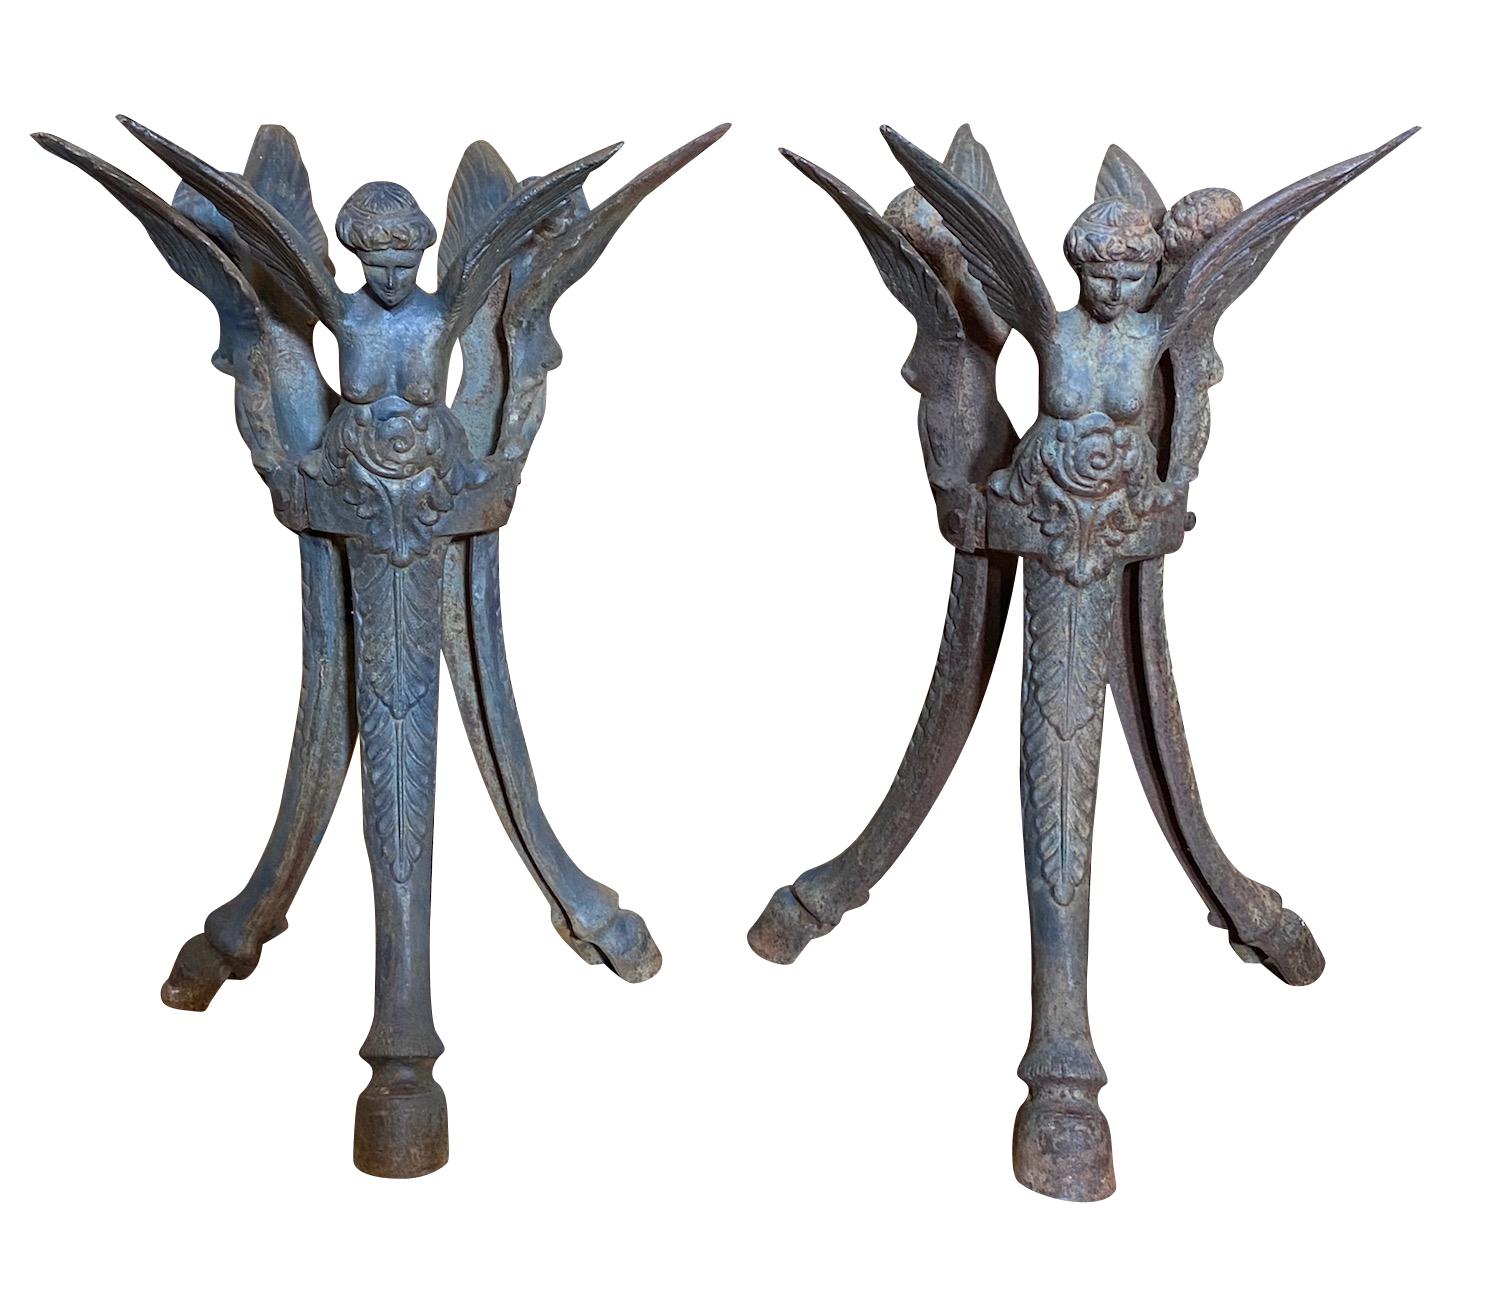 Paire de tables d'appoint figuratives françaises anciennes en fer forgé, vers 1900
Patine foncée avec trois chérubins ailés et des pieds en sabots. 